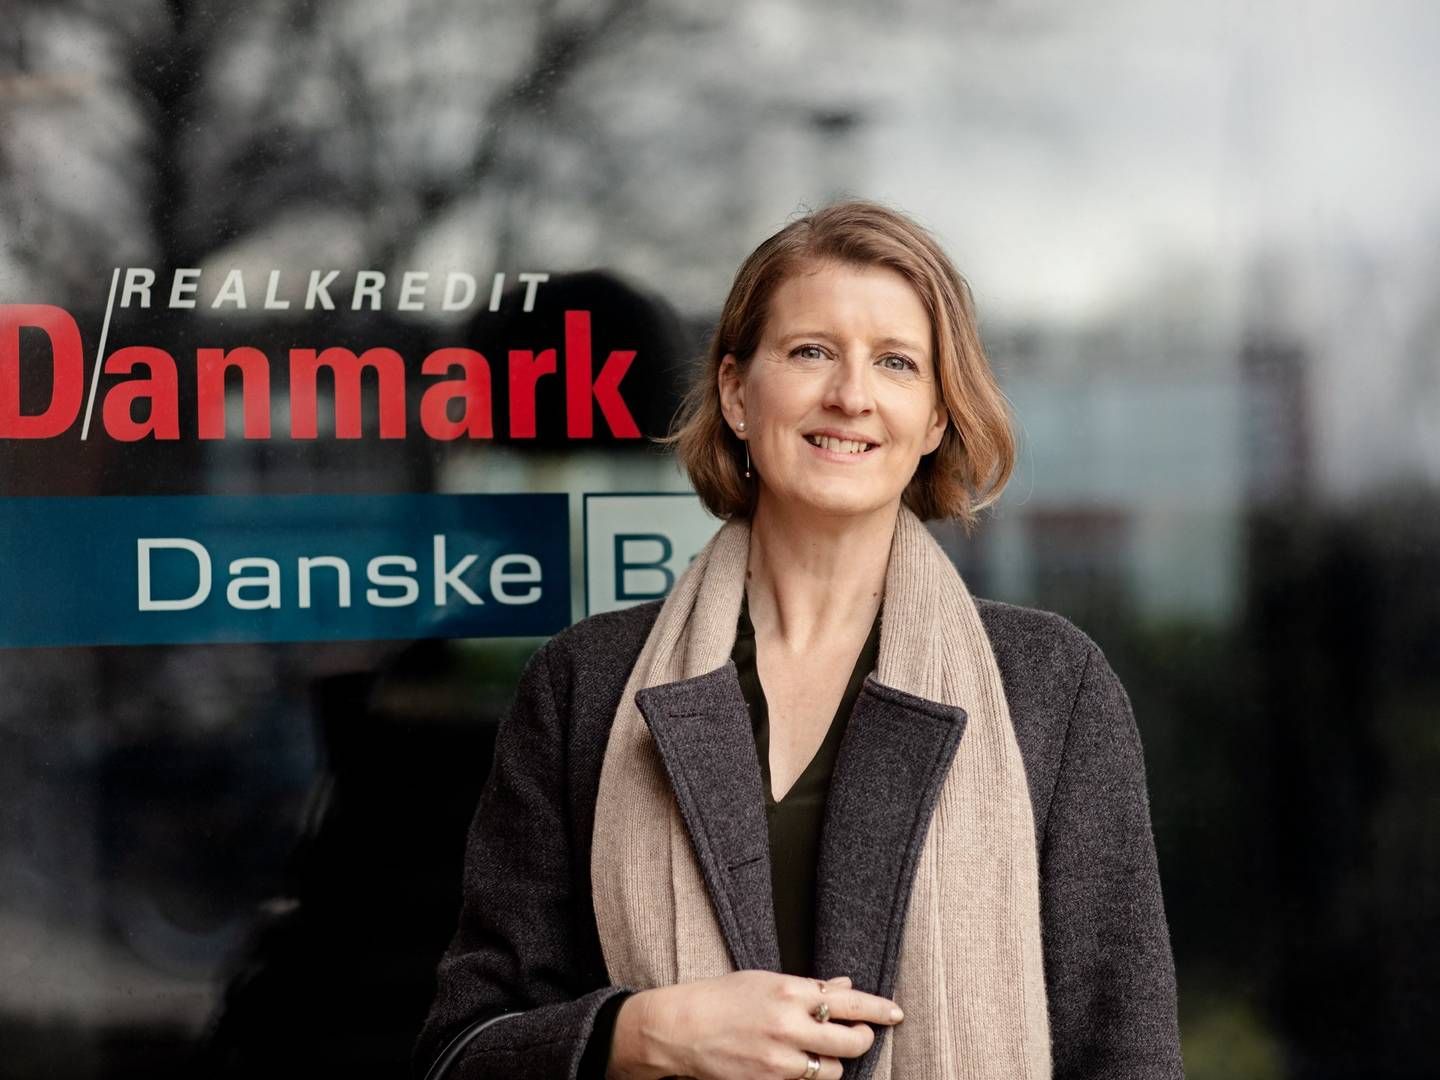 Realkredit Danmark, der er ejet af Danske Bank, vil fremover tilbyde rabatter til sine kunder. | Foto: Pr/realkredit Danmark